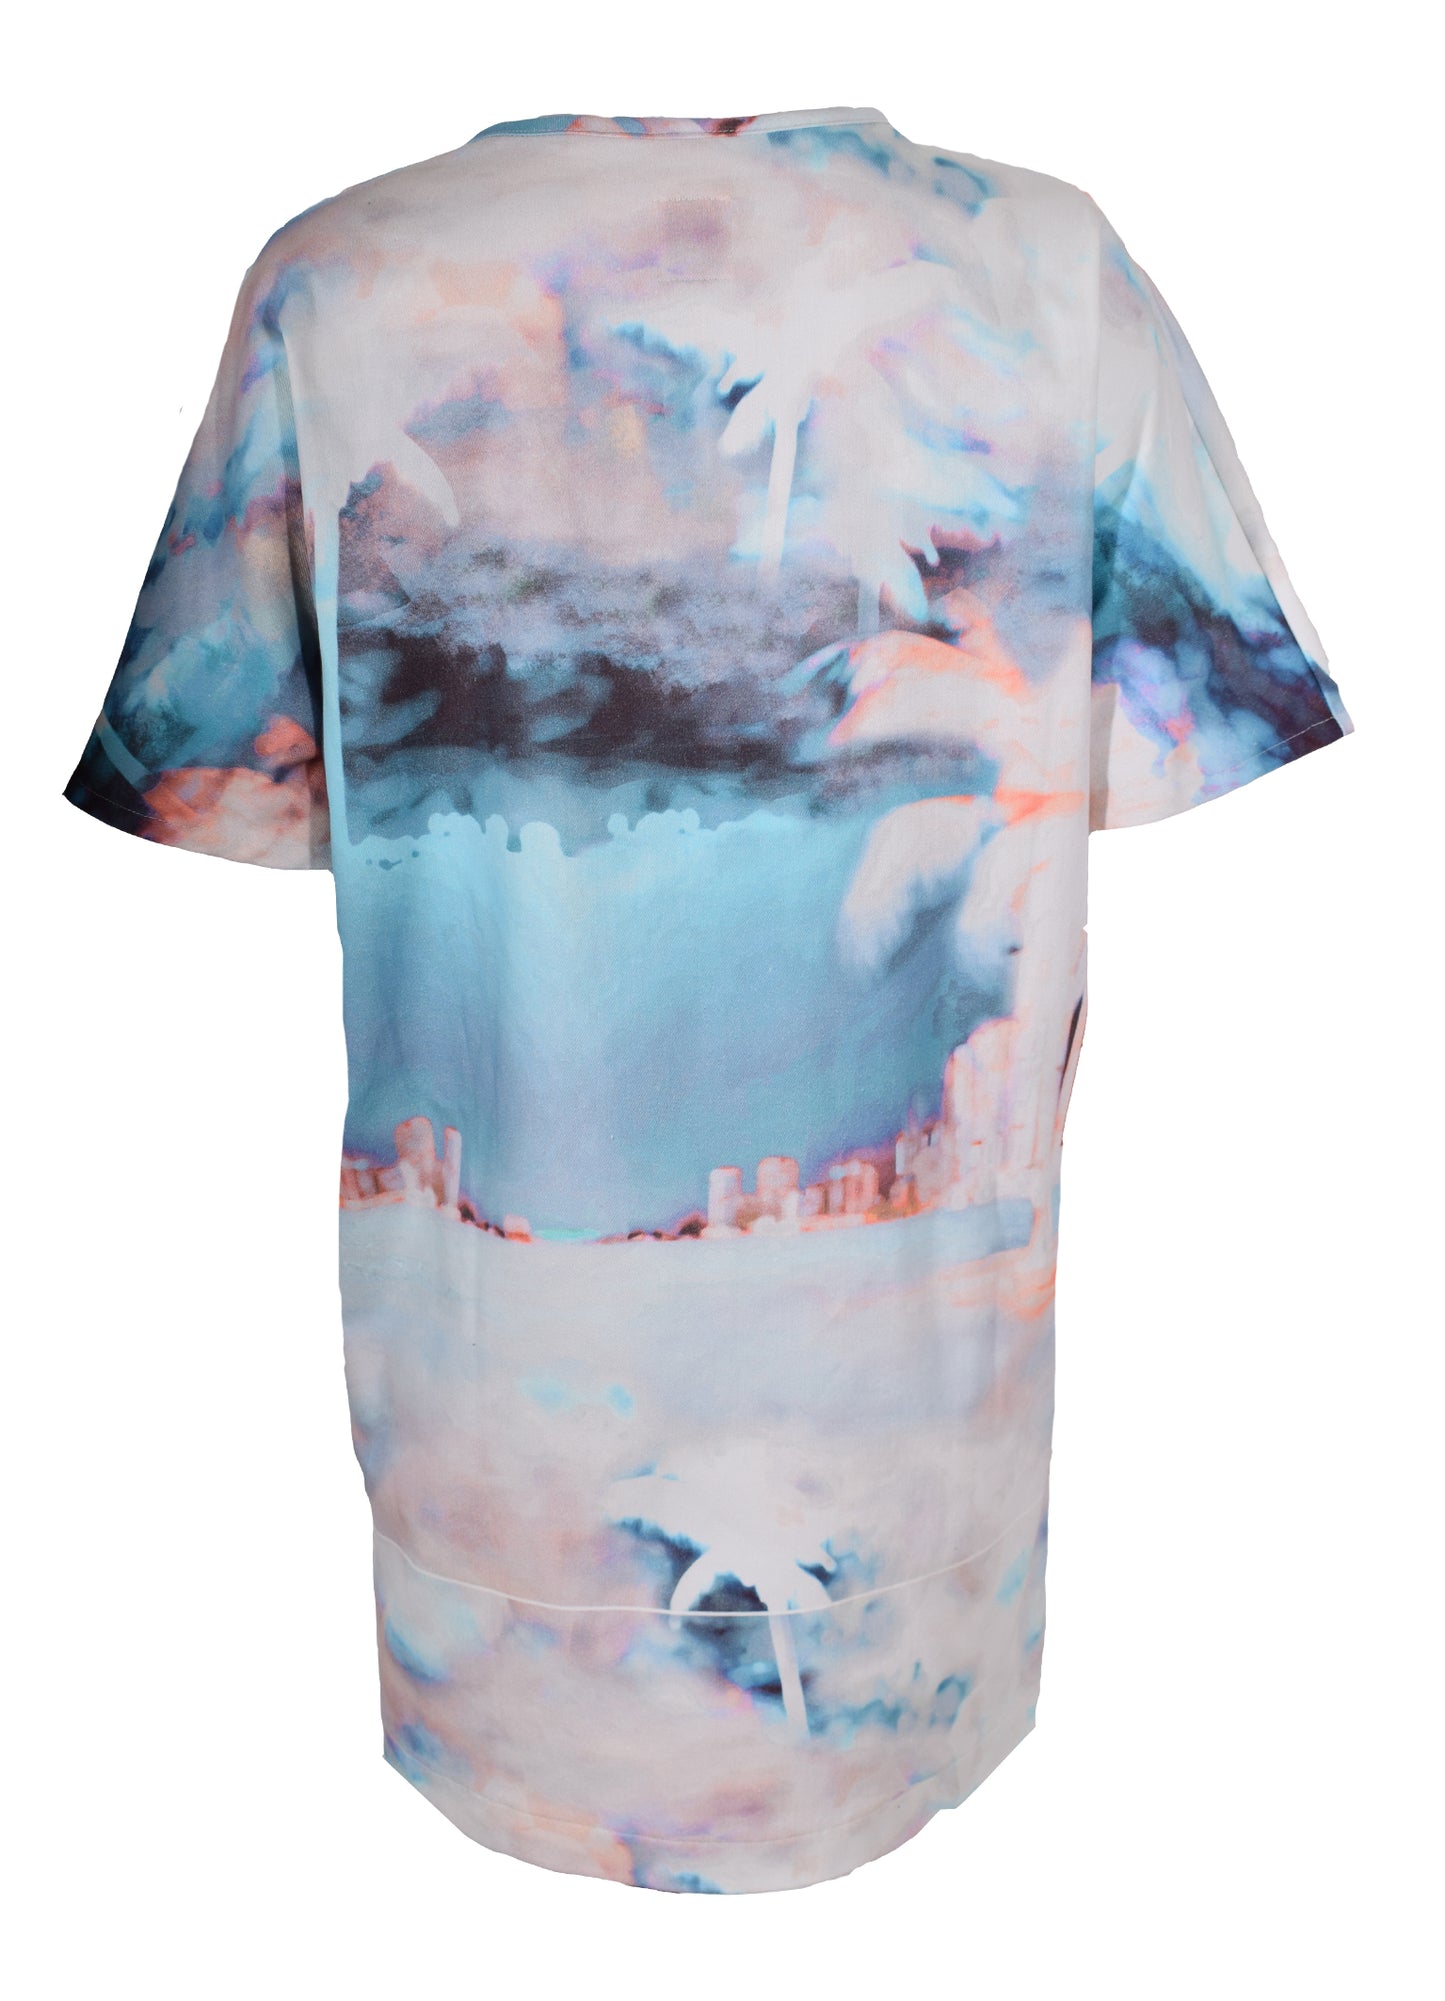 HEL Shirtkleid "Beachprint" mehrfarbig mit Eingriffstaschen